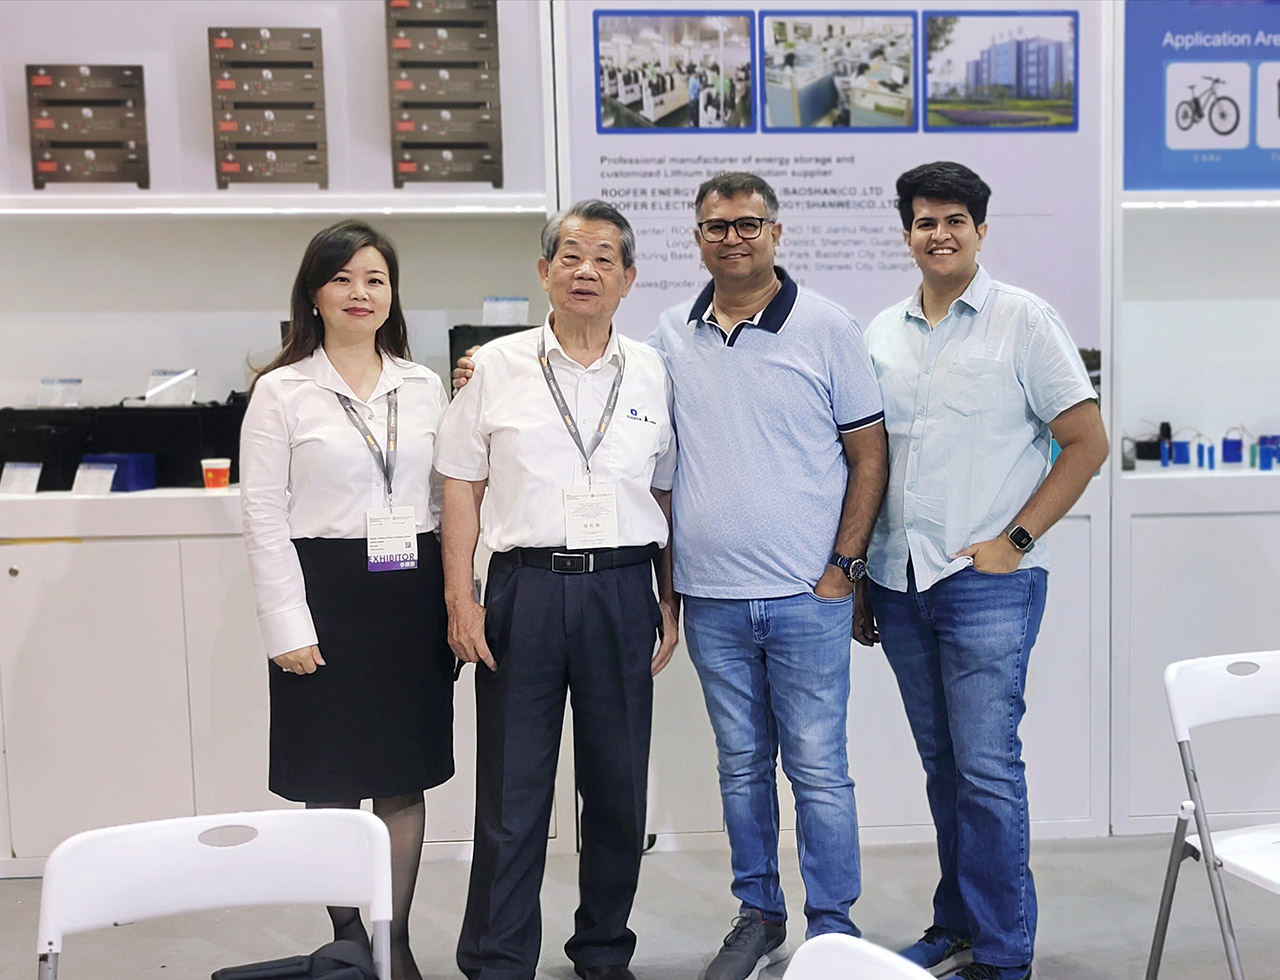 Roofer Group debutis ĉe la Hong Kong Autumn Electronics Exhibition kun novaj energistokaj produktoj